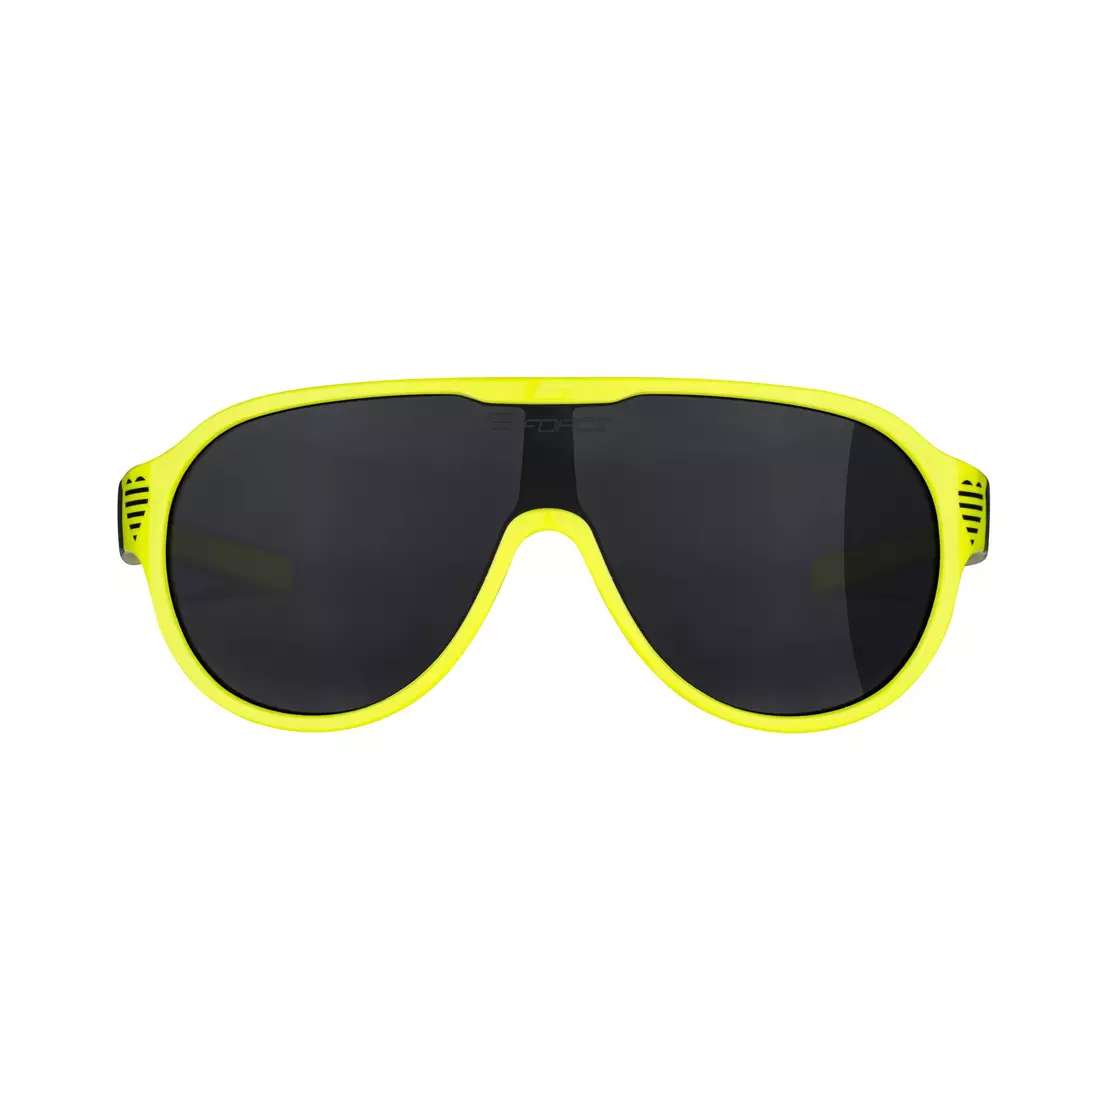 FORCE dámské sluneční brýle ROSIE, fluo-černé, černé čočky 90966